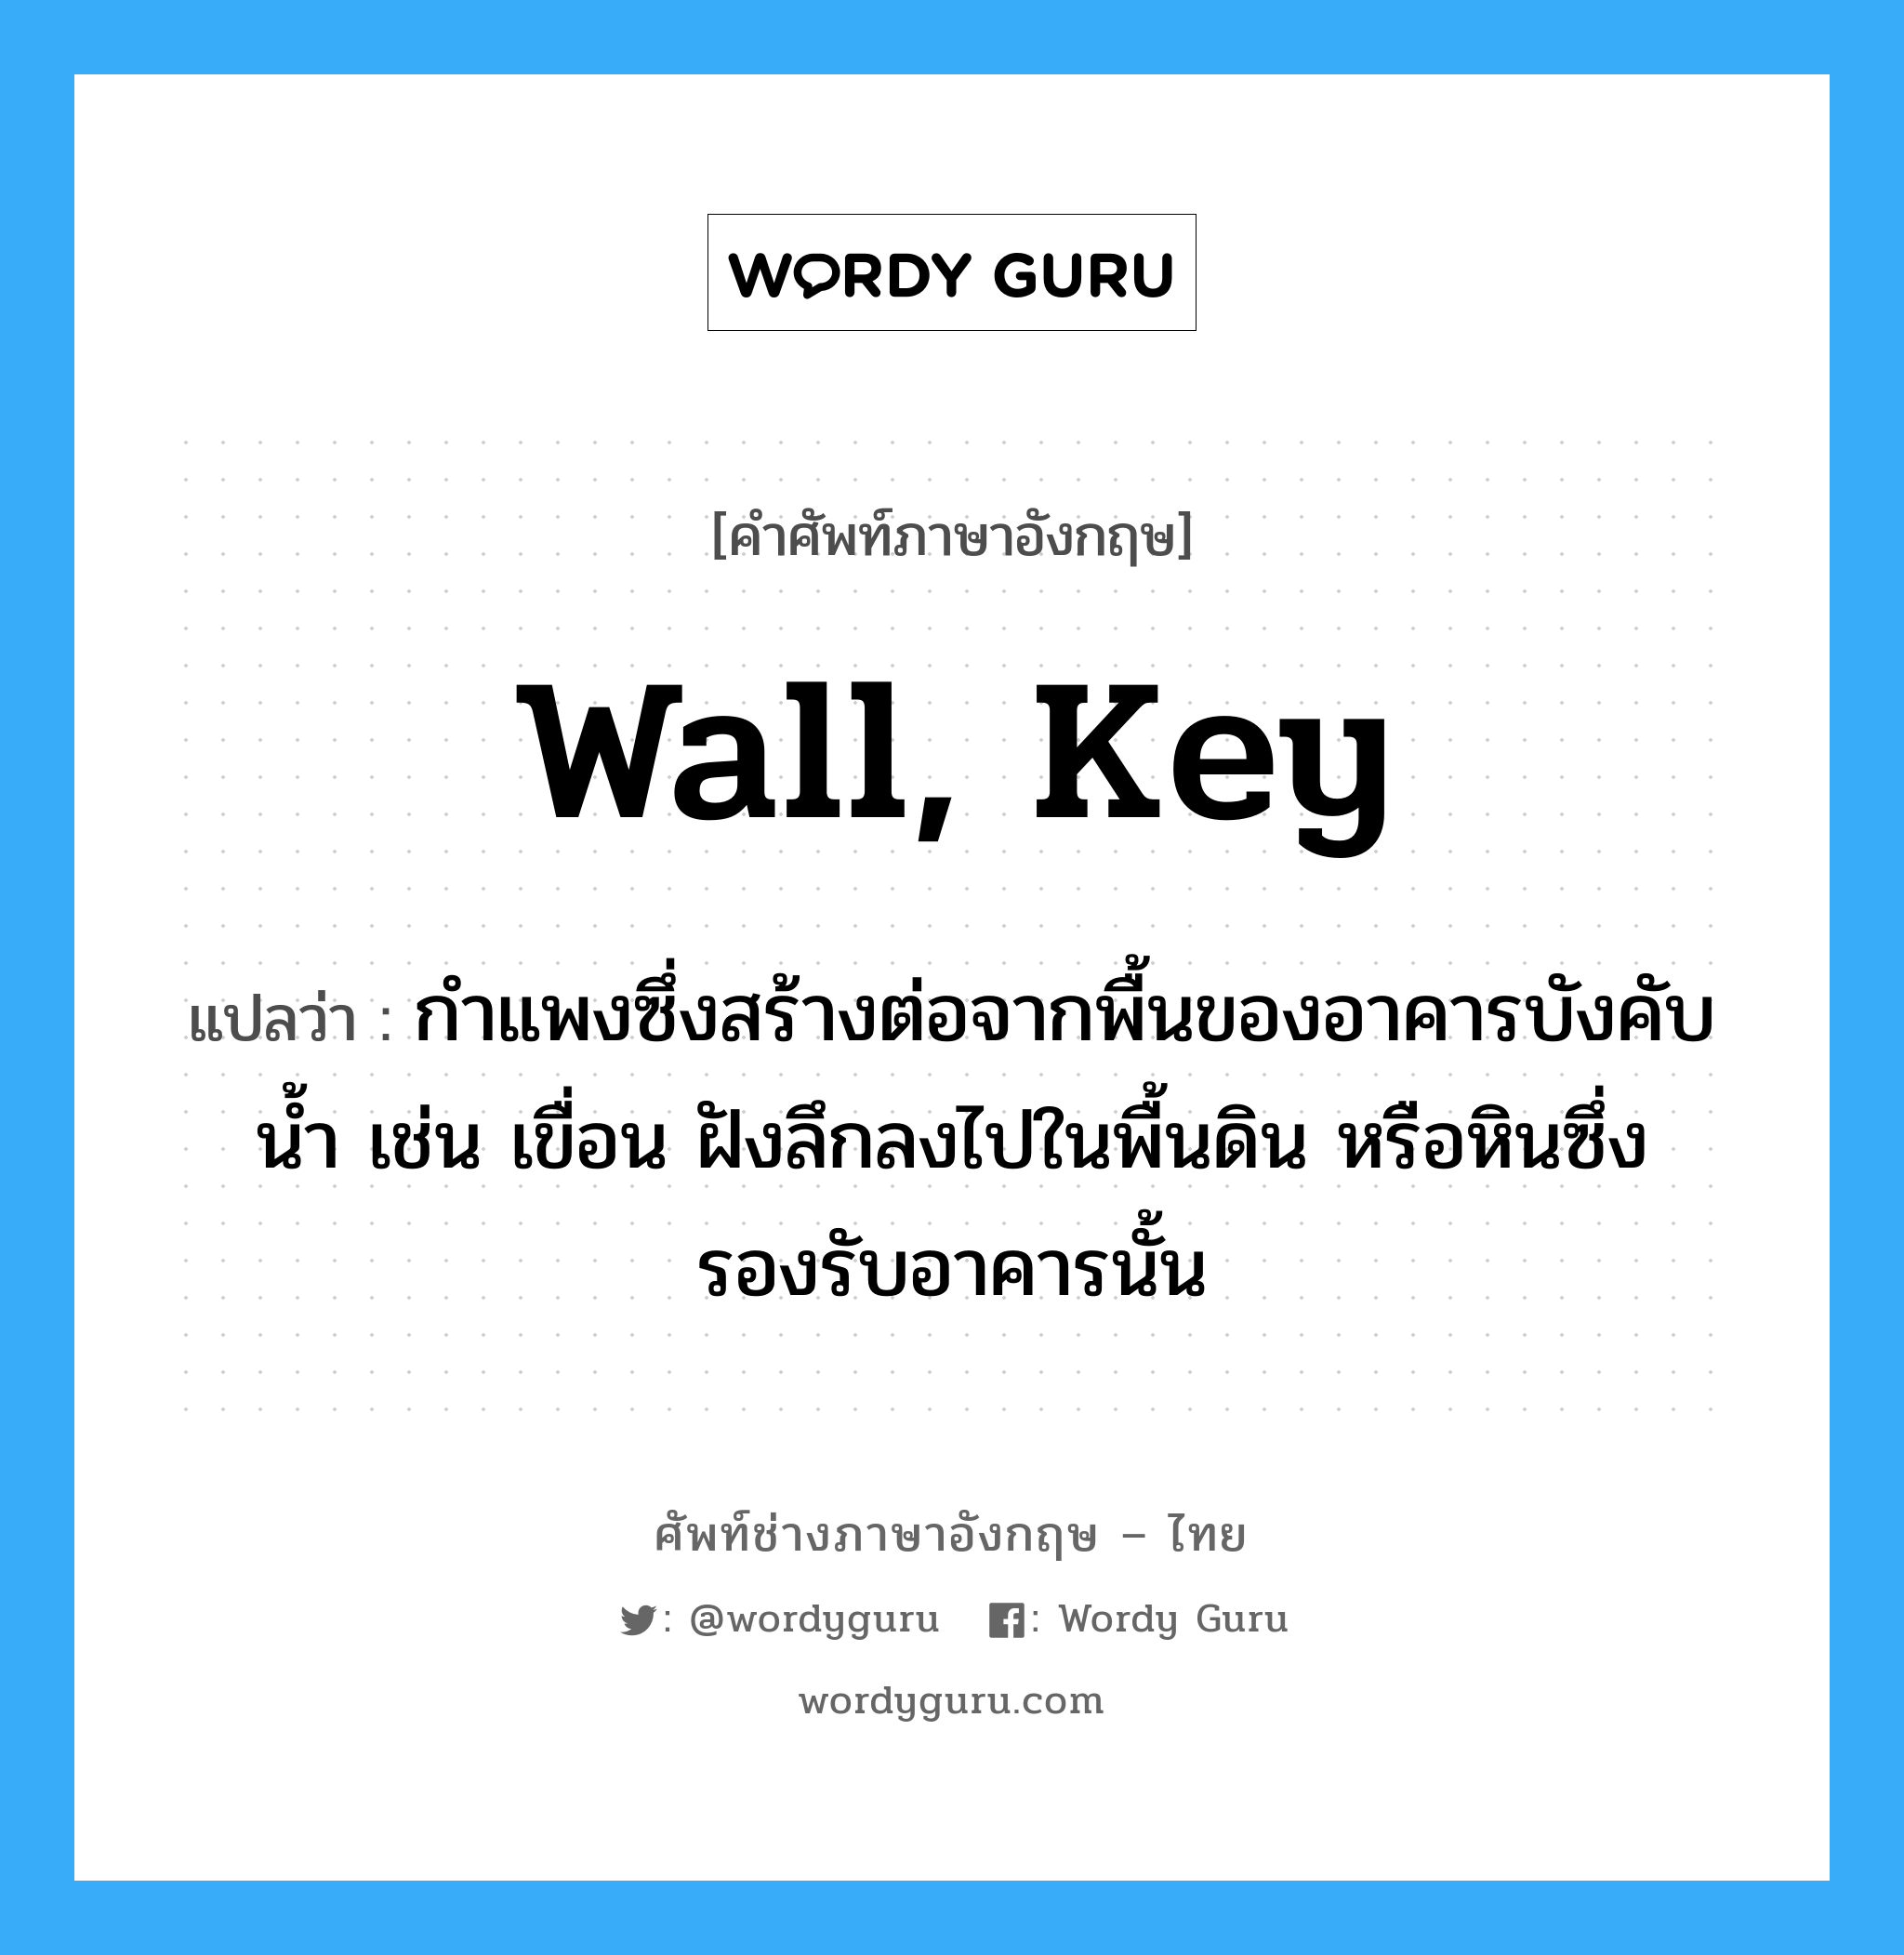 wall, key แปลว่า?, คำศัพท์ช่างภาษาอังกฤษ - ไทย wall, key คำศัพท์ภาษาอังกฤษ wall, key แปลว่า กำแพงซึ่งสร้างต่อจากพื้นของอาคารบังคับน้ำ เช่น เขื่อน ฝังลึกลงไปในพื้นดิน หรือหินซึ่งรองรับอาคารนั้น